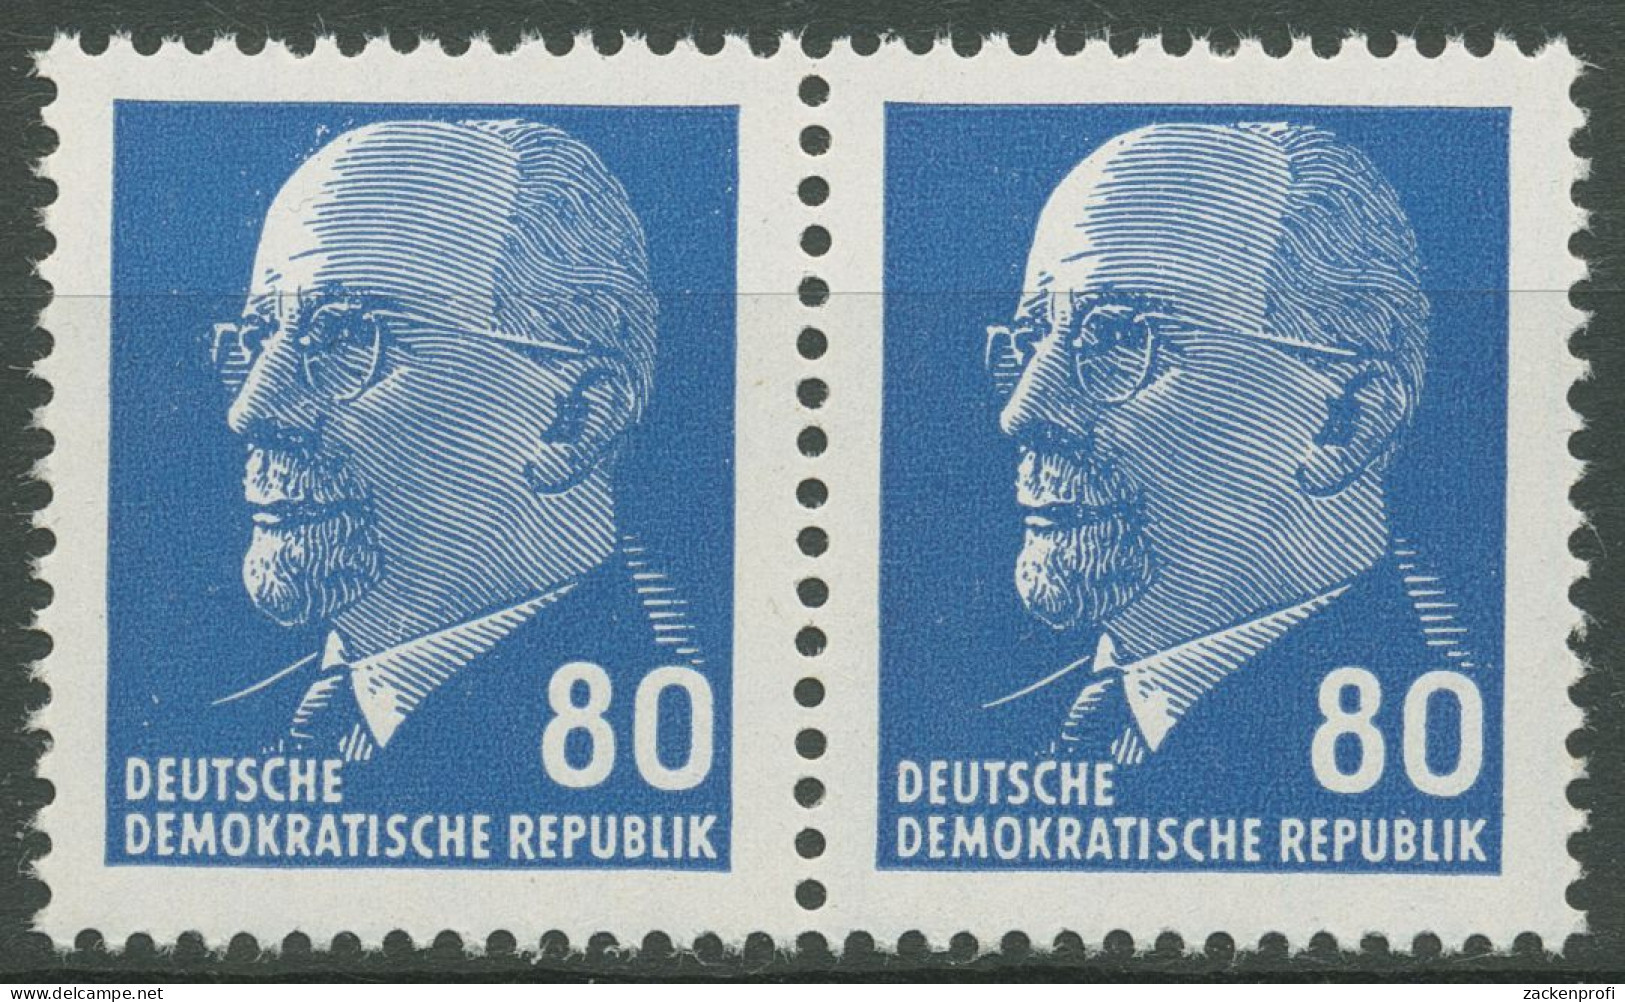 DDR 1967 Walter Ulbricht 1331 Az II Waag. Paar Postfrisch - Unused Stamps